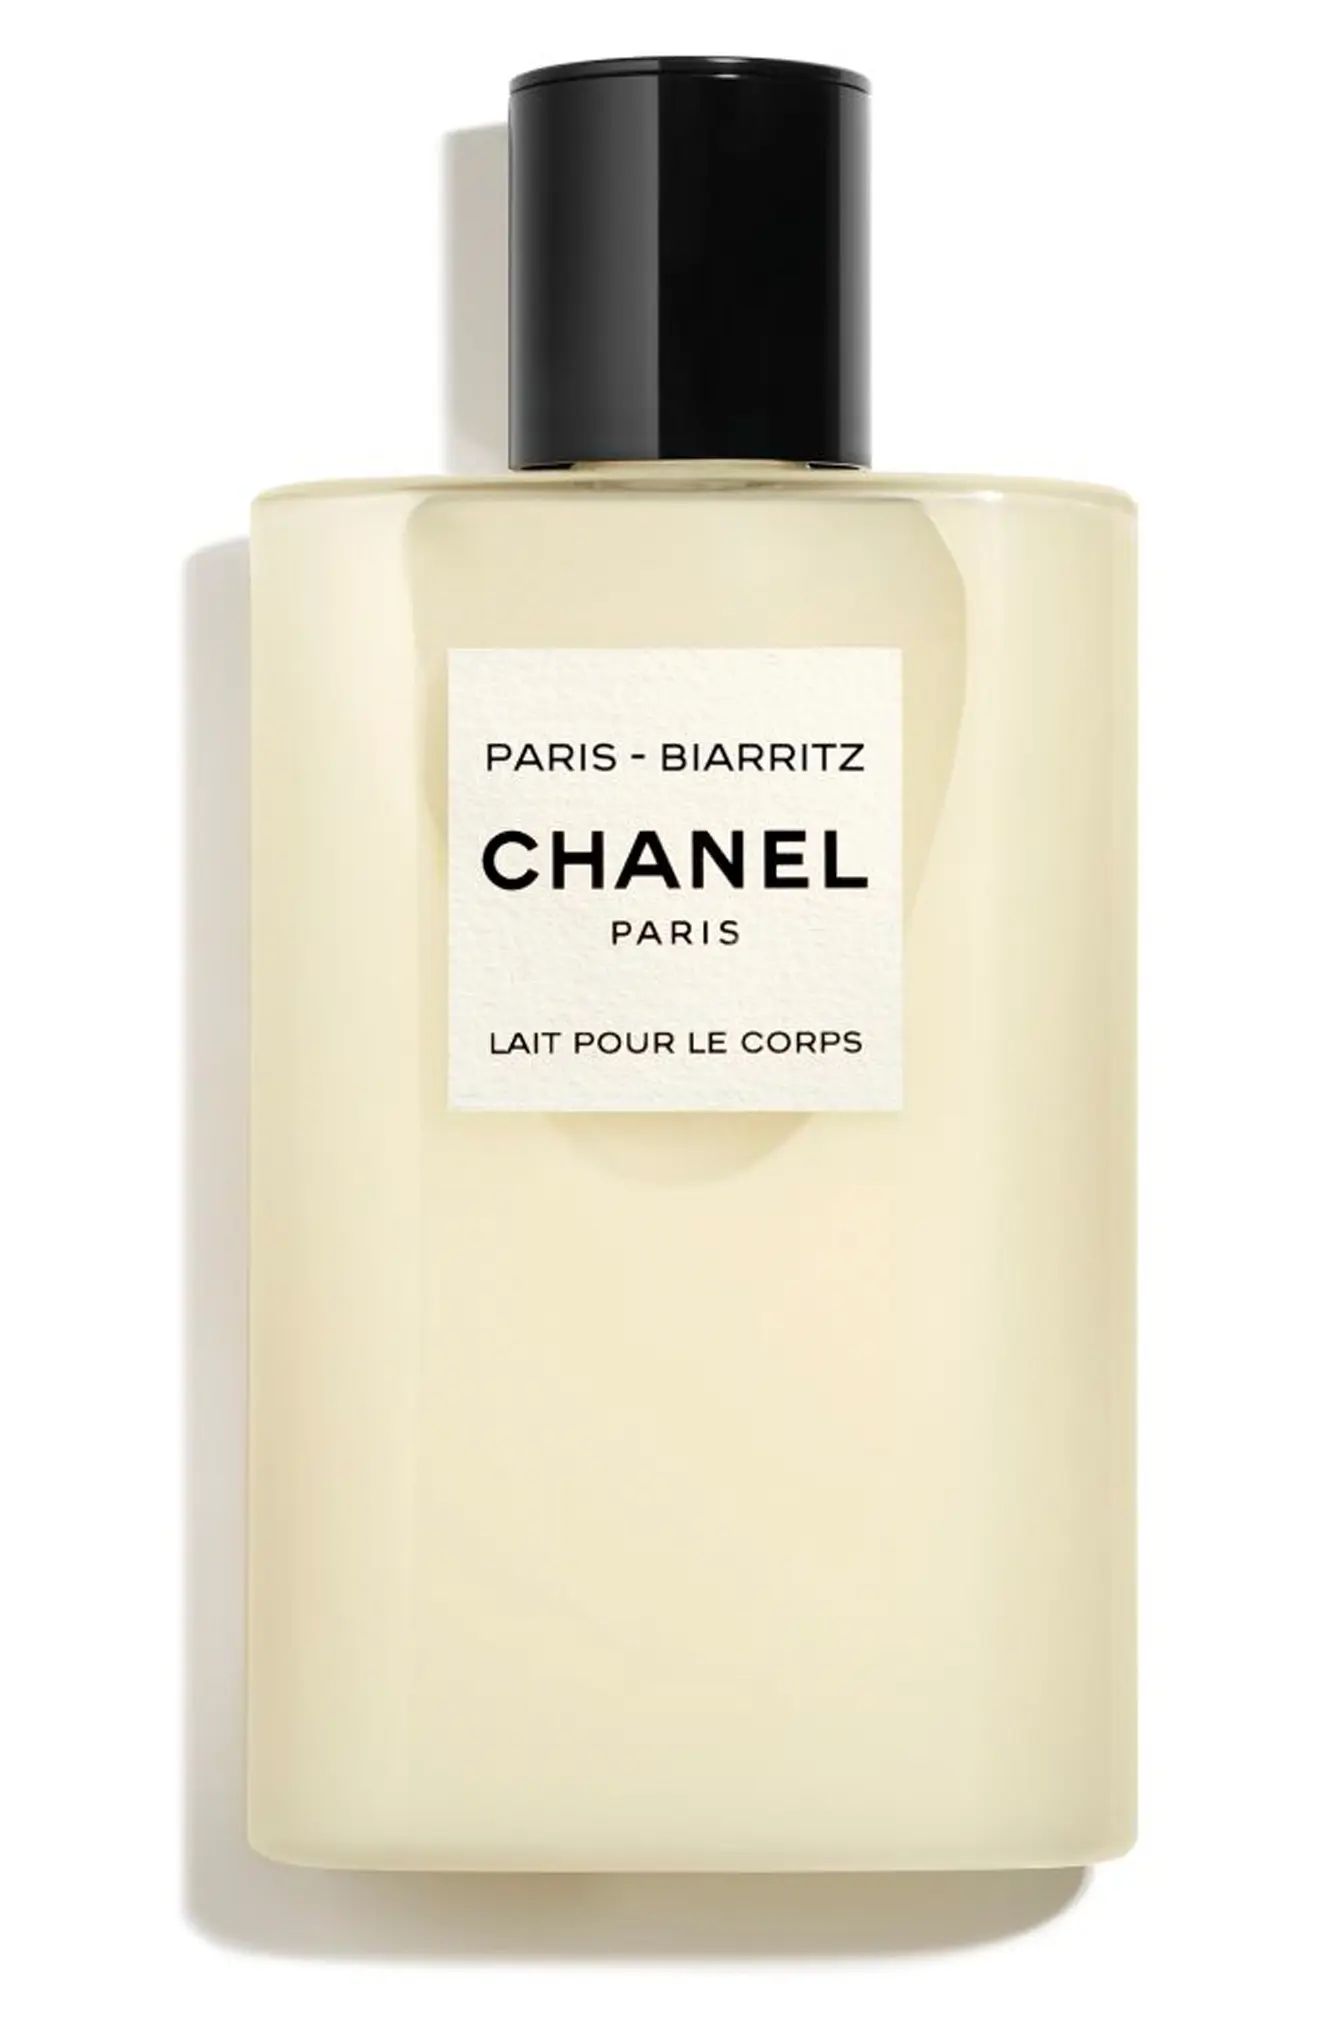 CHANEL LES EAUX DE CHANEL PARIS-BIARRITZ Perfumed Body Lotion (Nordstrom Exclusive) | Nordstrom